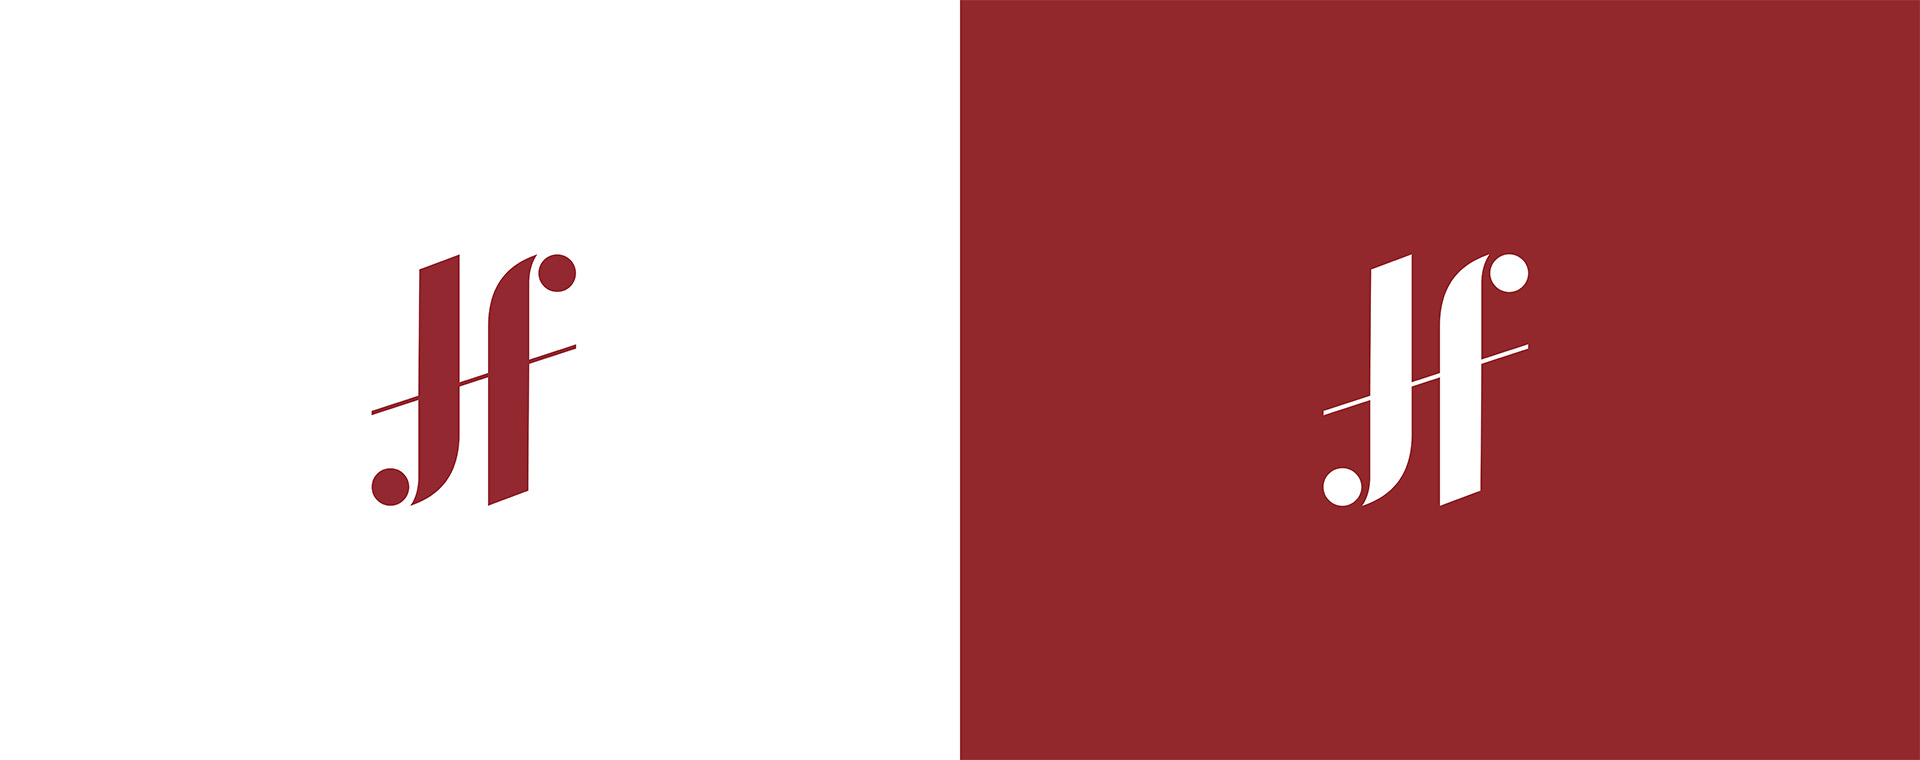 logo van HJF in de huisstijl kleuren: rood op wit, en in wit op rood